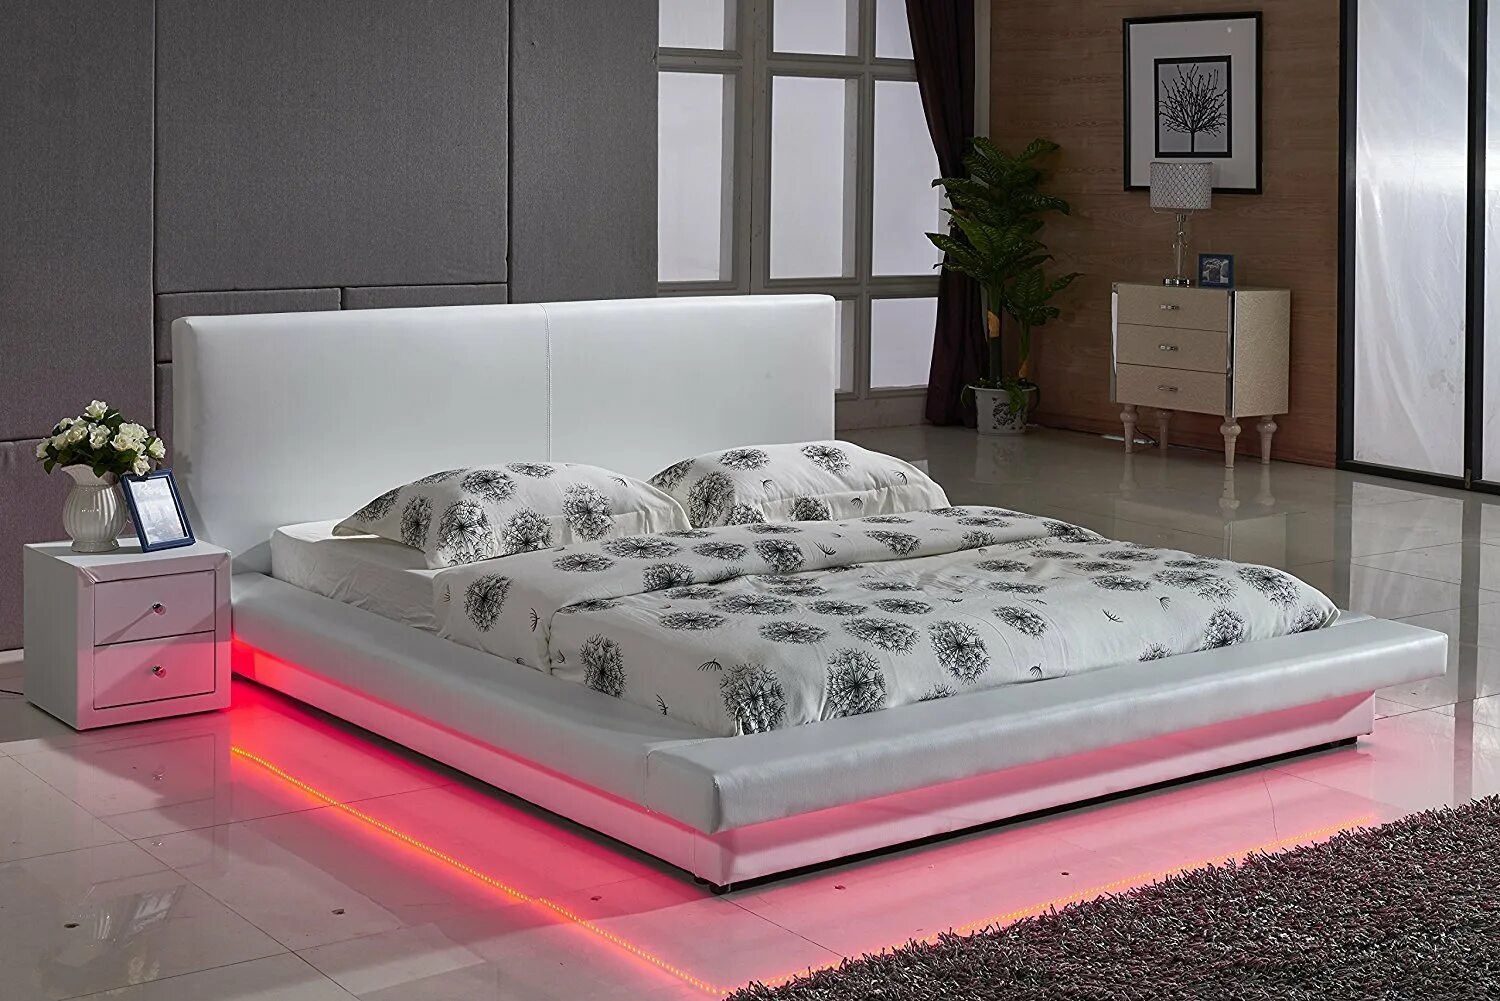 Кровать с подсветкой гамма BMS. Xiaomi 8h Milan. Кровать двуспальная с подсветкой. Красивые современные кровати.